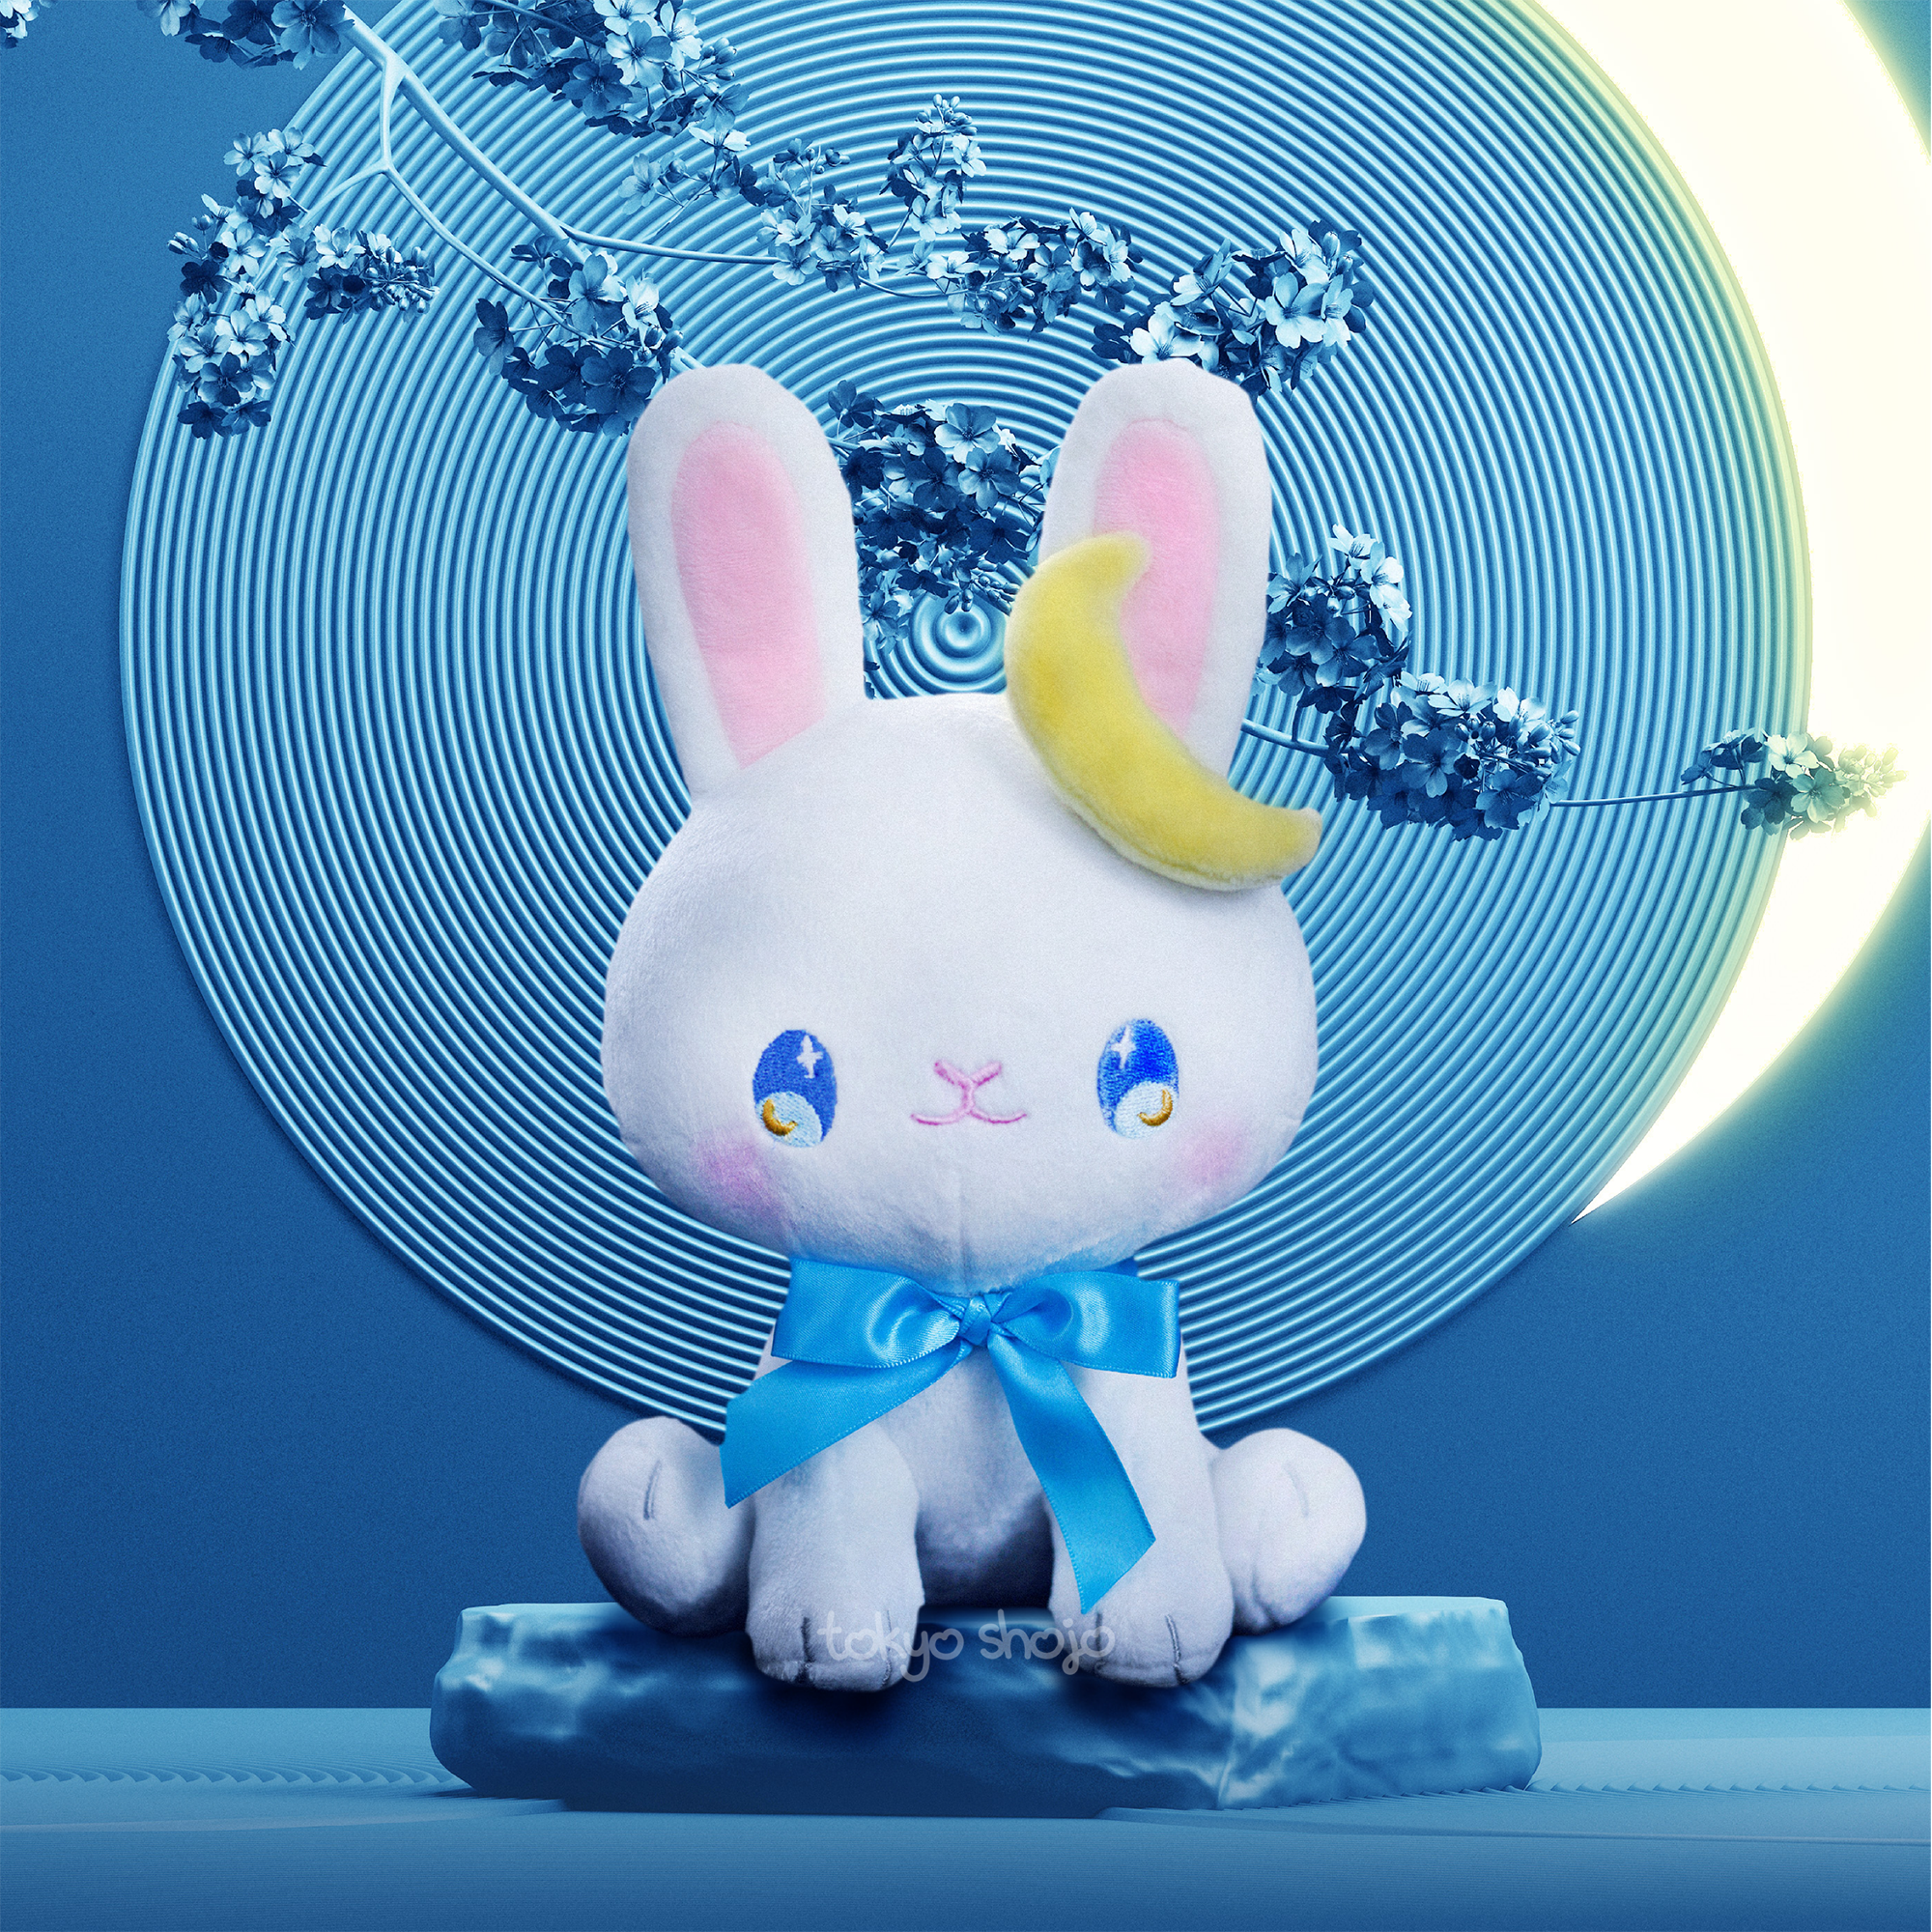 Tsuki the Bunny Plushie by Tokyo Shojo